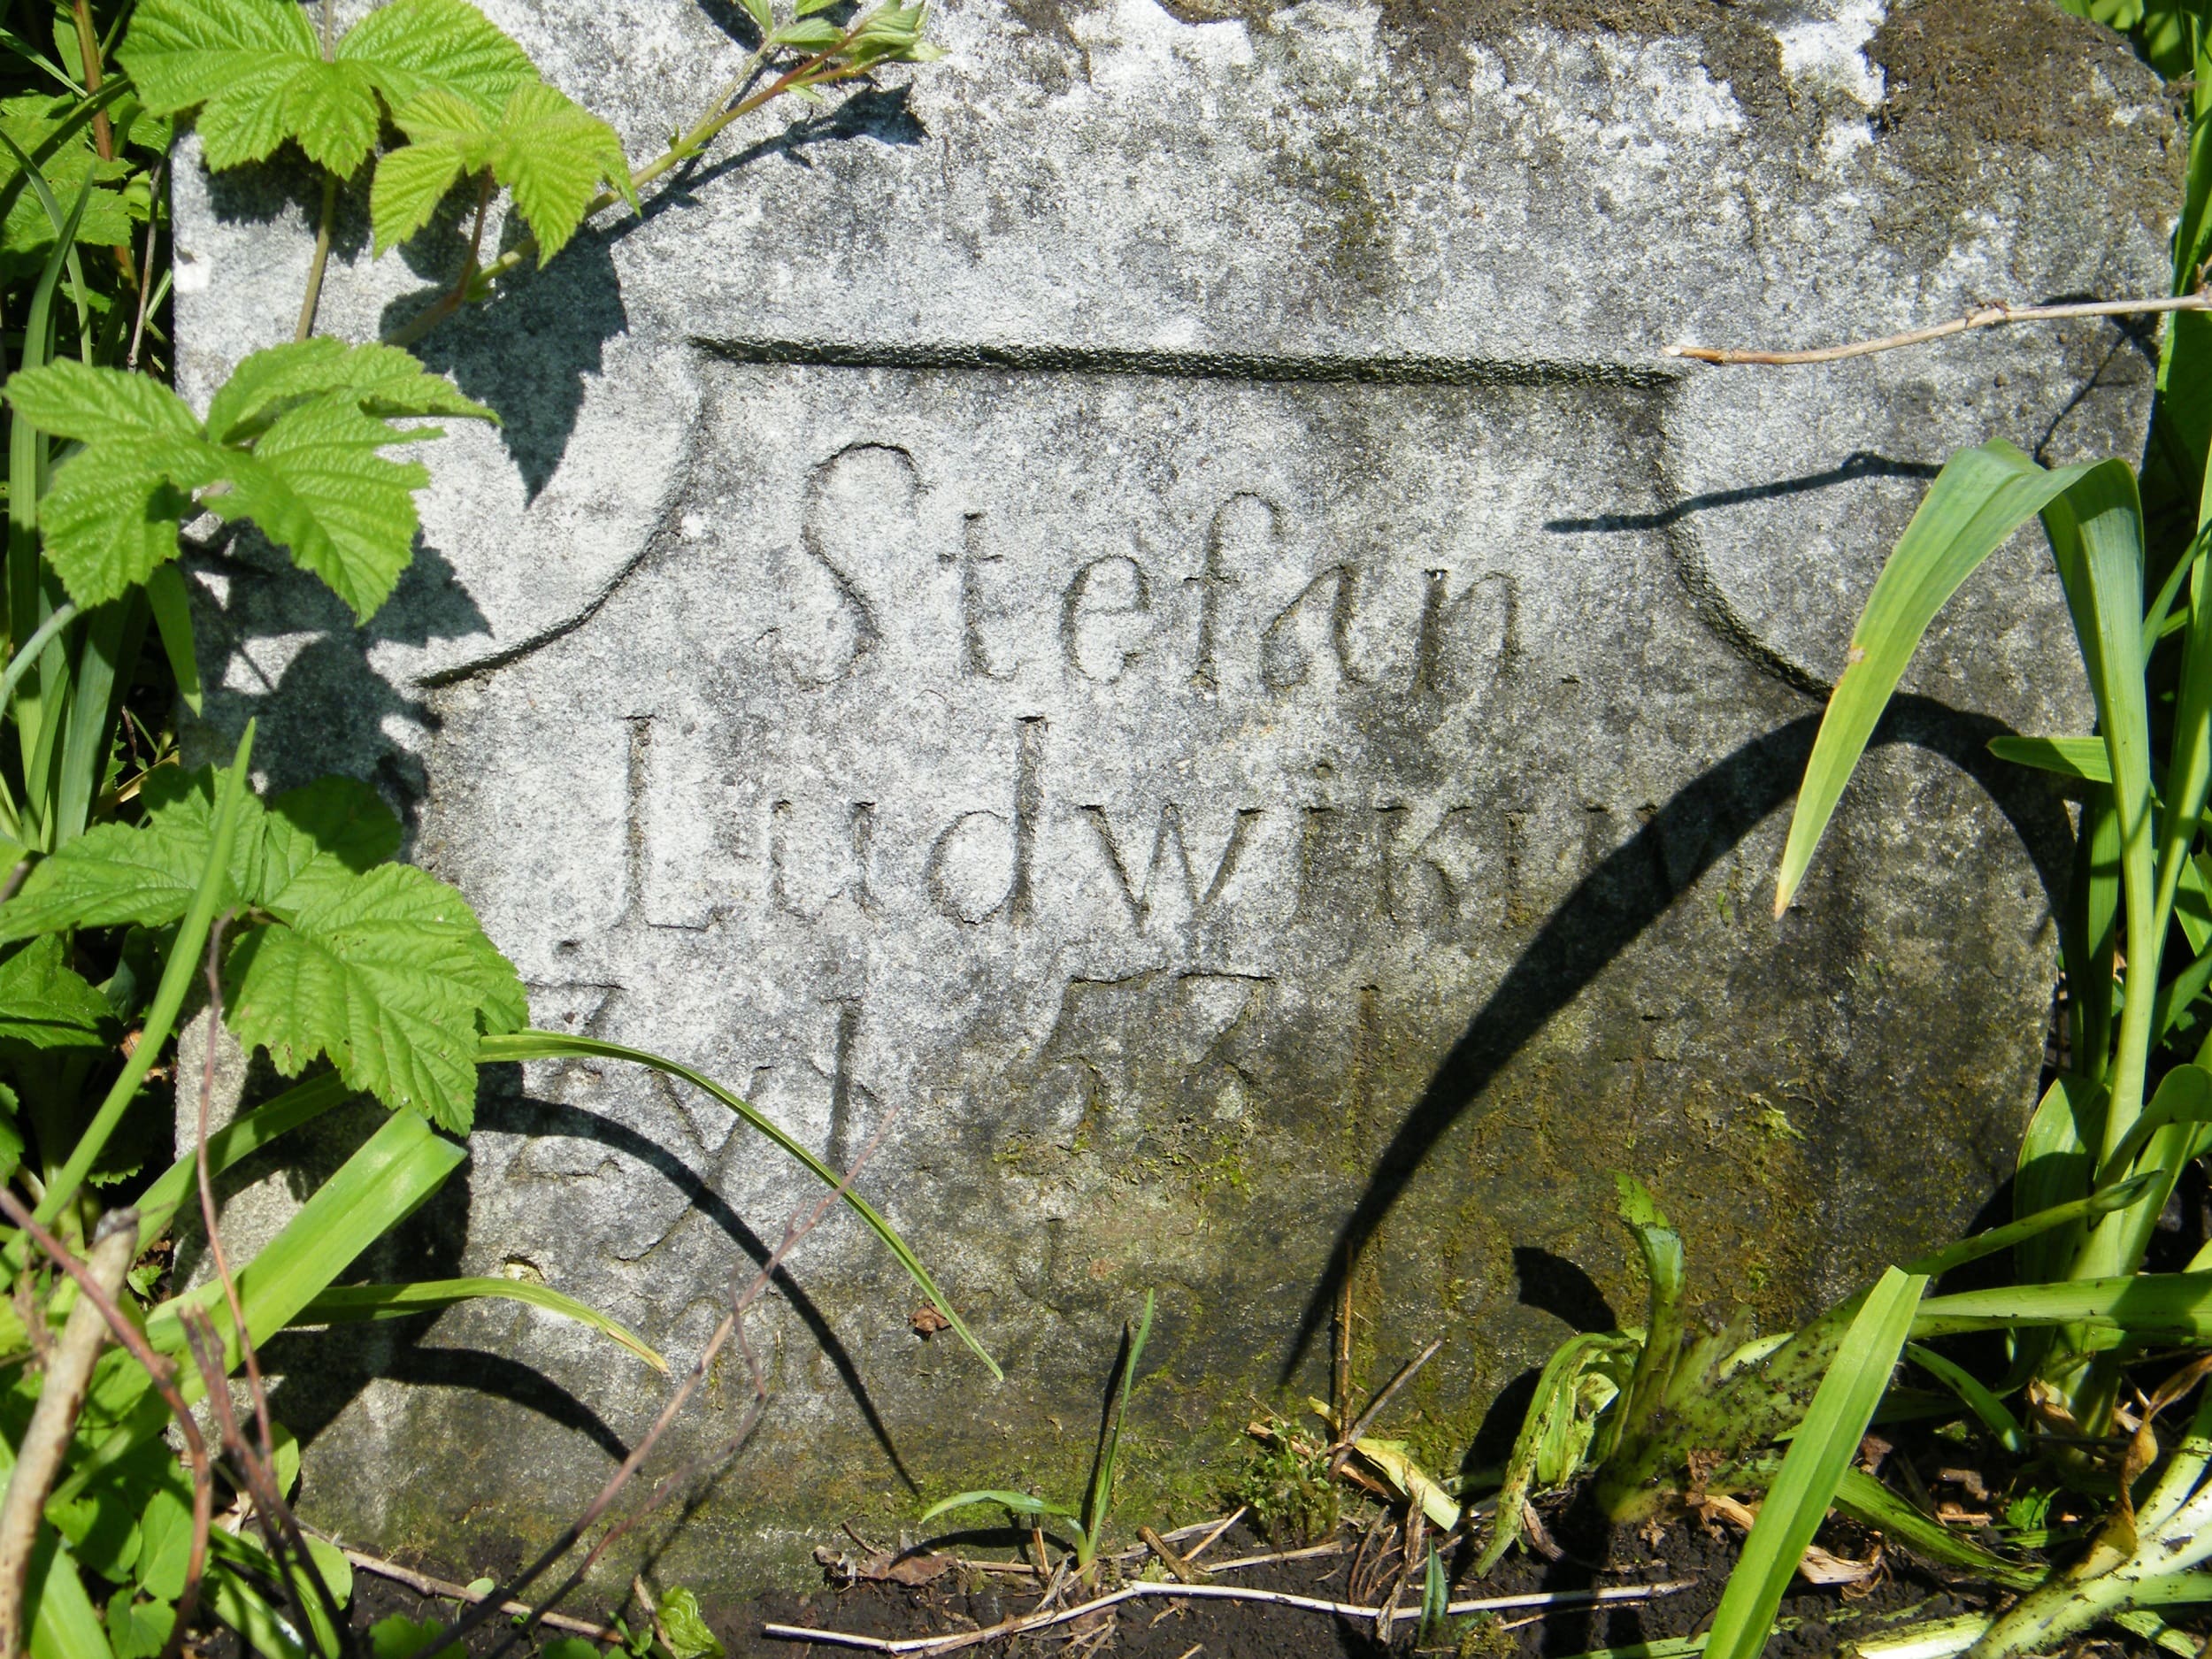 Inskrypcja z nagrobka Stefana Ludwikuwa. Cmentarz w Cebrowie